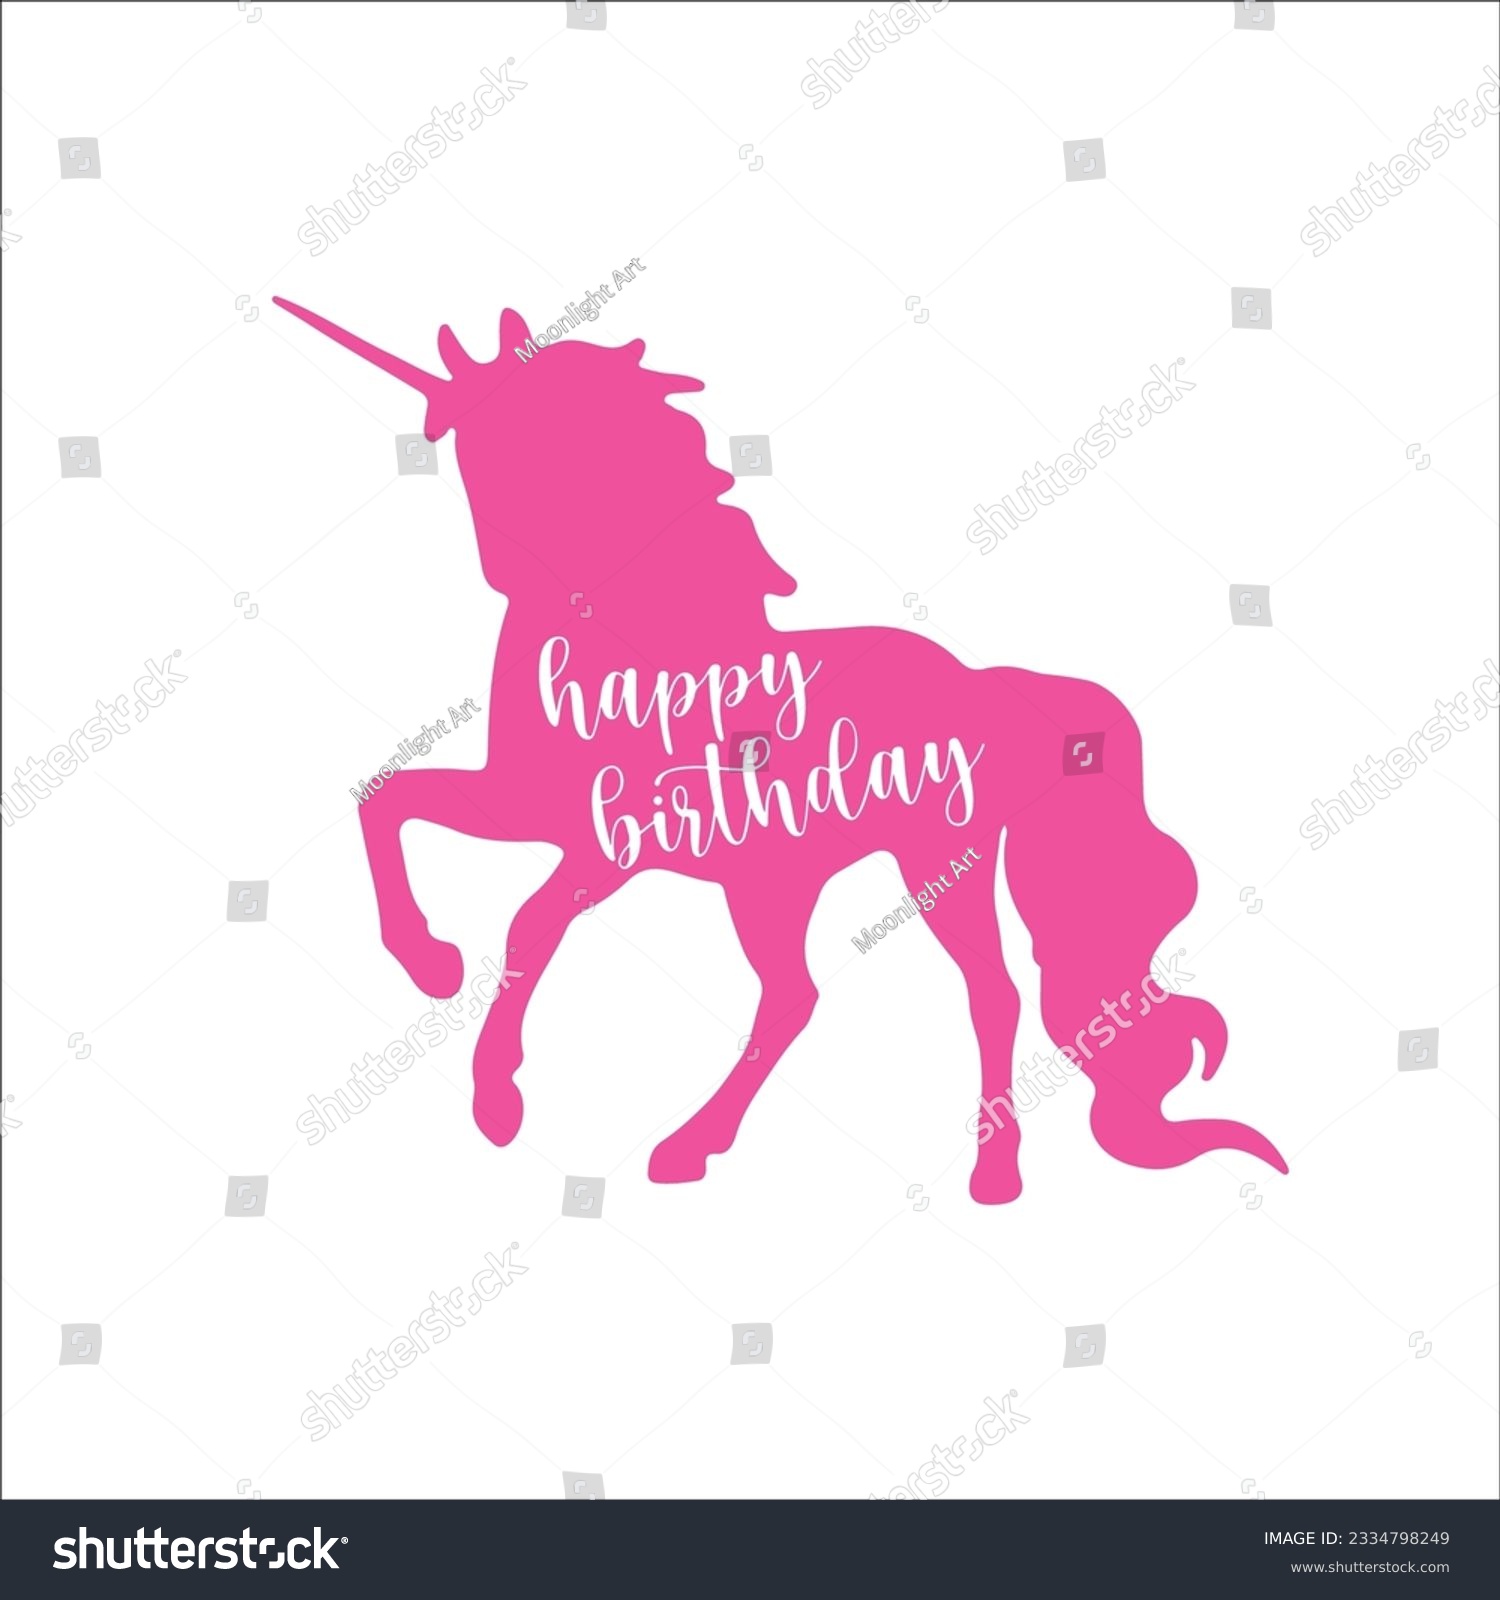 SVG of Happy Birthday Svg, Unicorn Svg, Silhouette, Unicorn Clip Art, Graphics Svg, Magical Unicorn, Unicorn Design, Cricut Cut File, Svg Files for Cricut svg